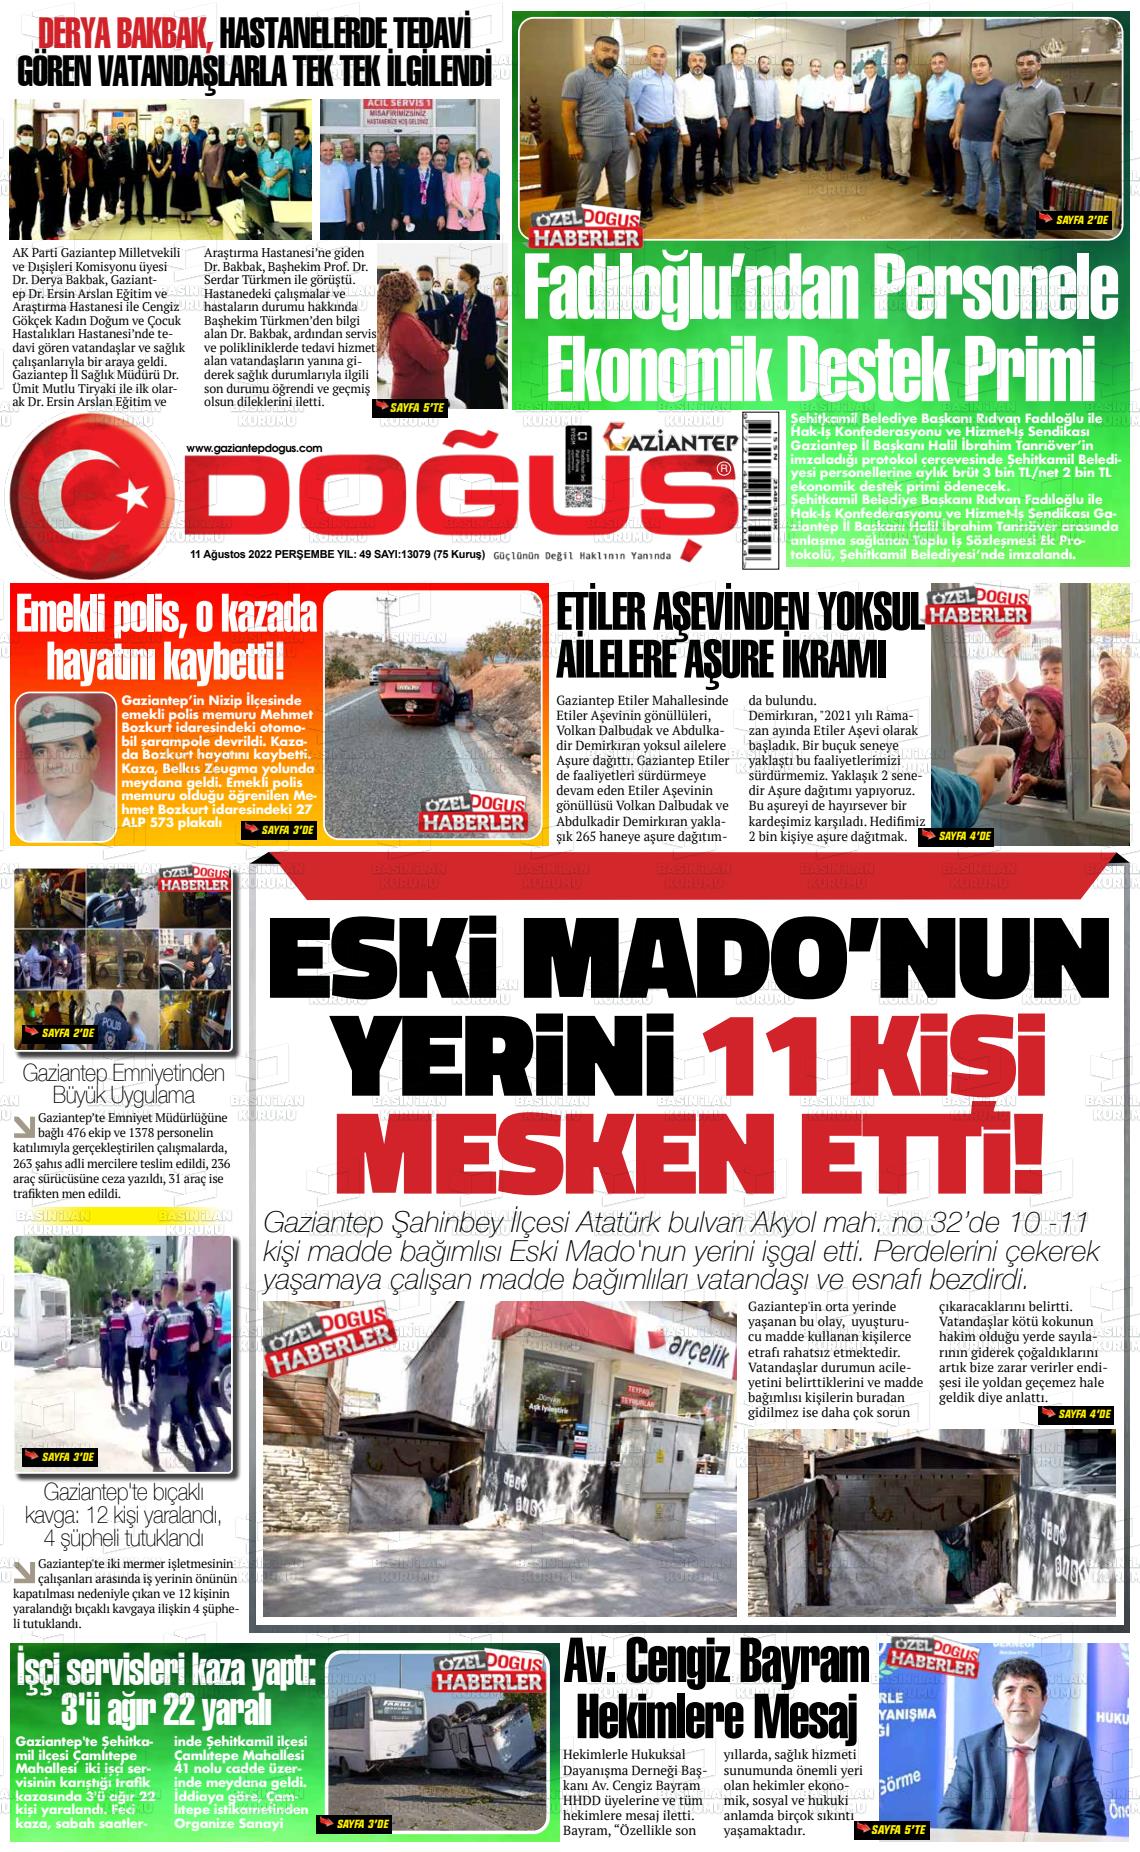 11 Ağustos 2022 Gaziantep Doğuş Gazete Manşeti